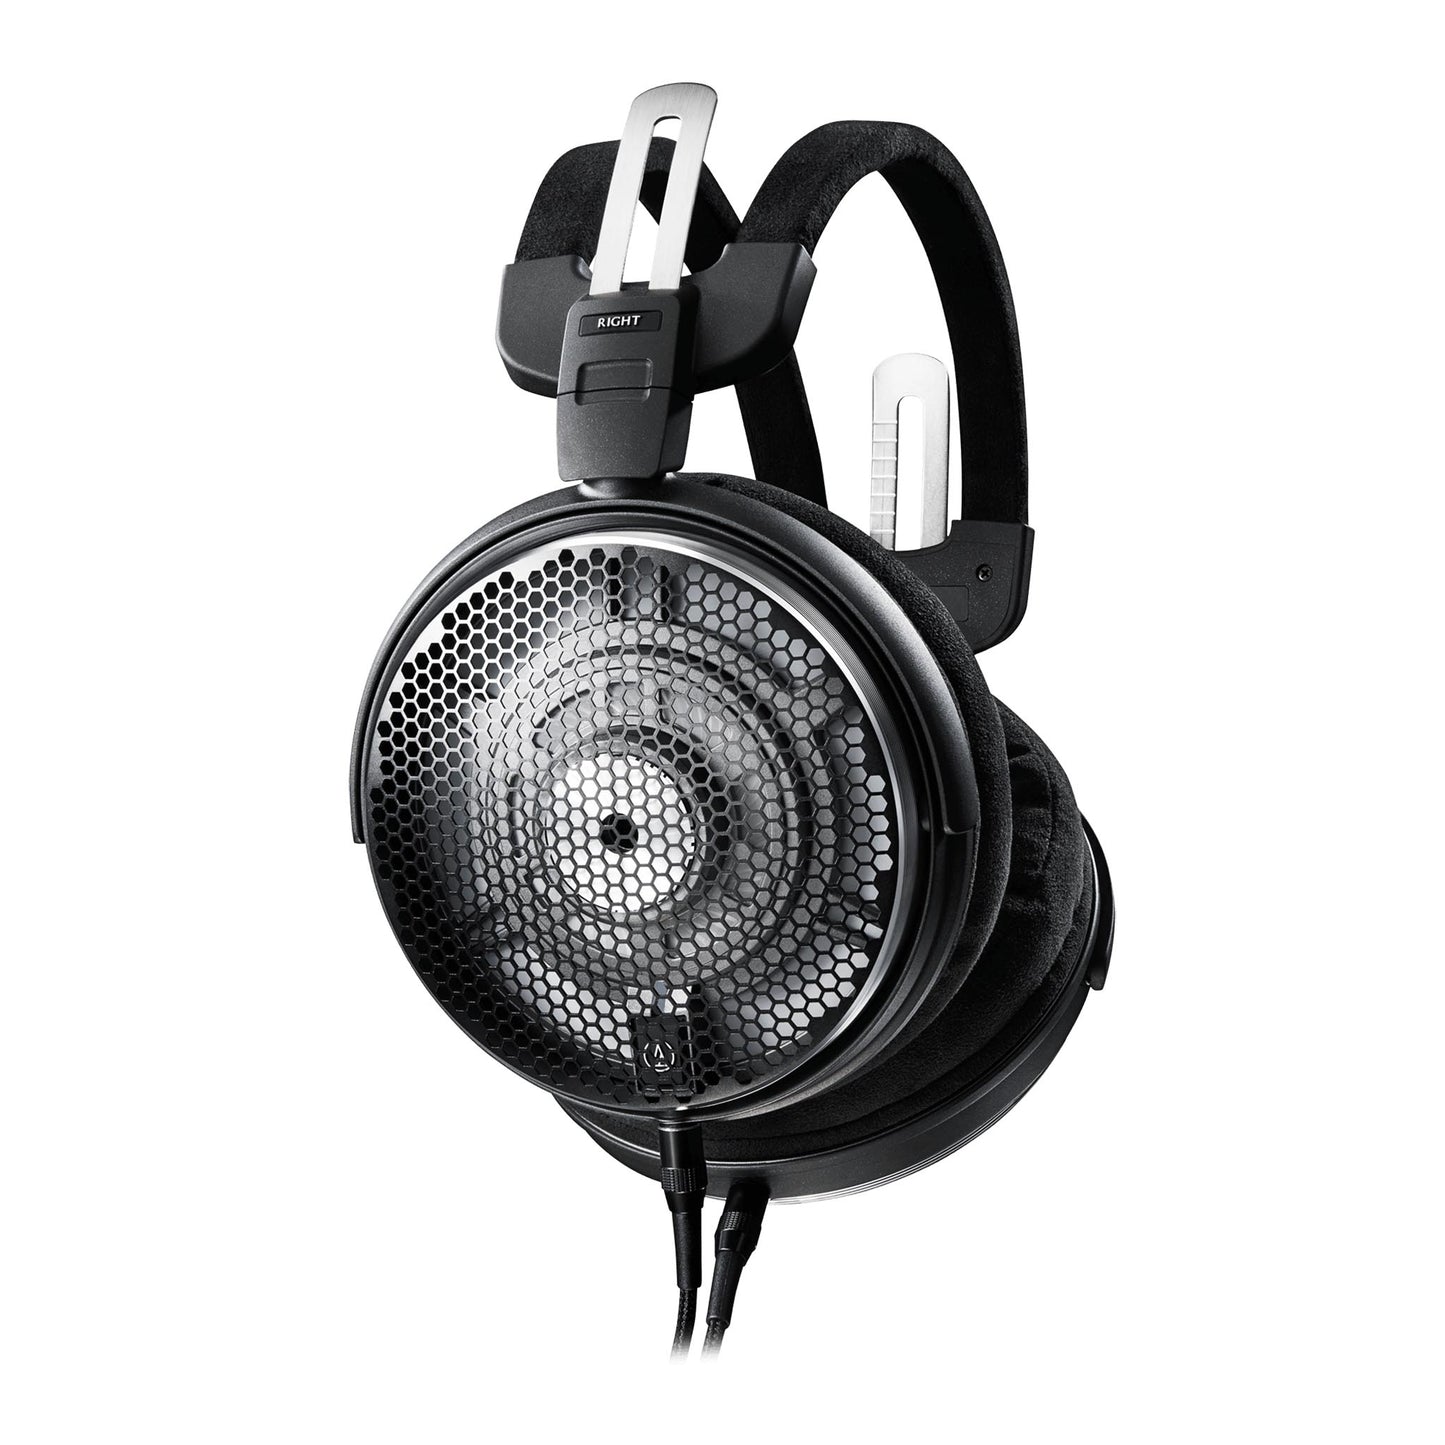 Audio-Technica ADX-5000 Open Back Headphones